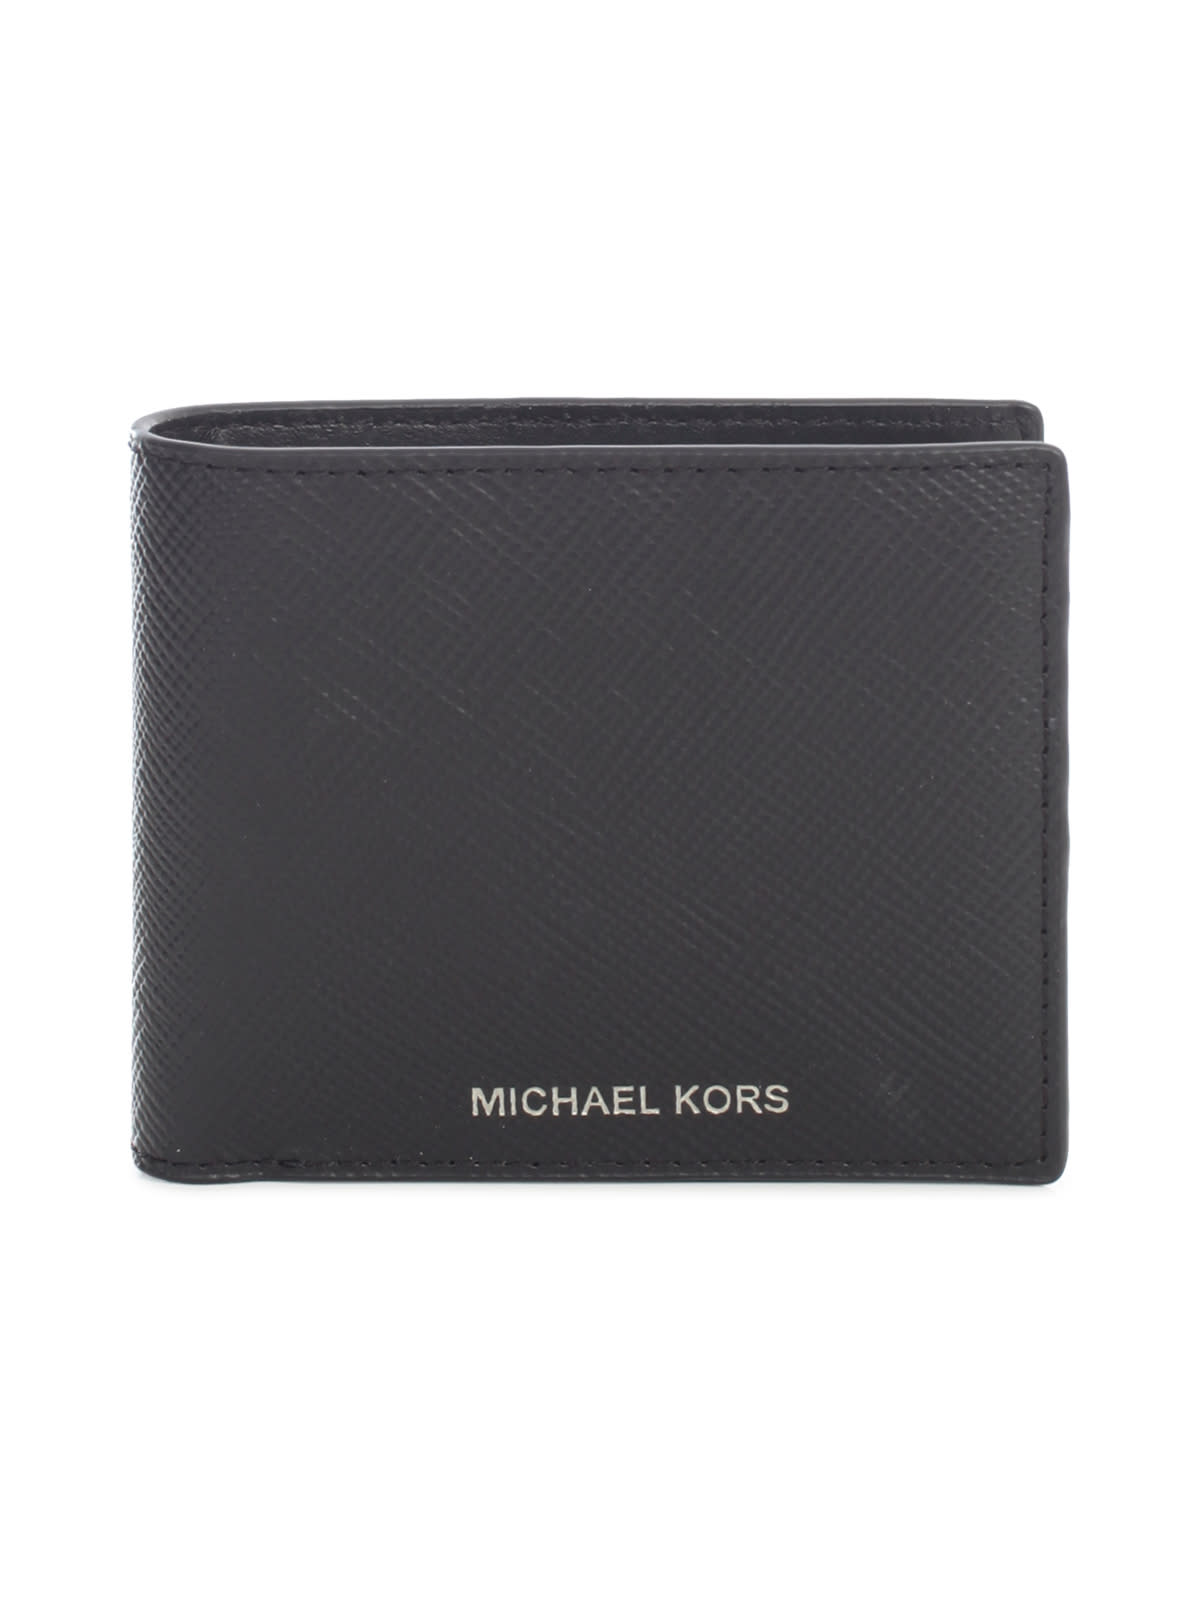 Michael Kors Men's Mason Bi-Fold Wallet